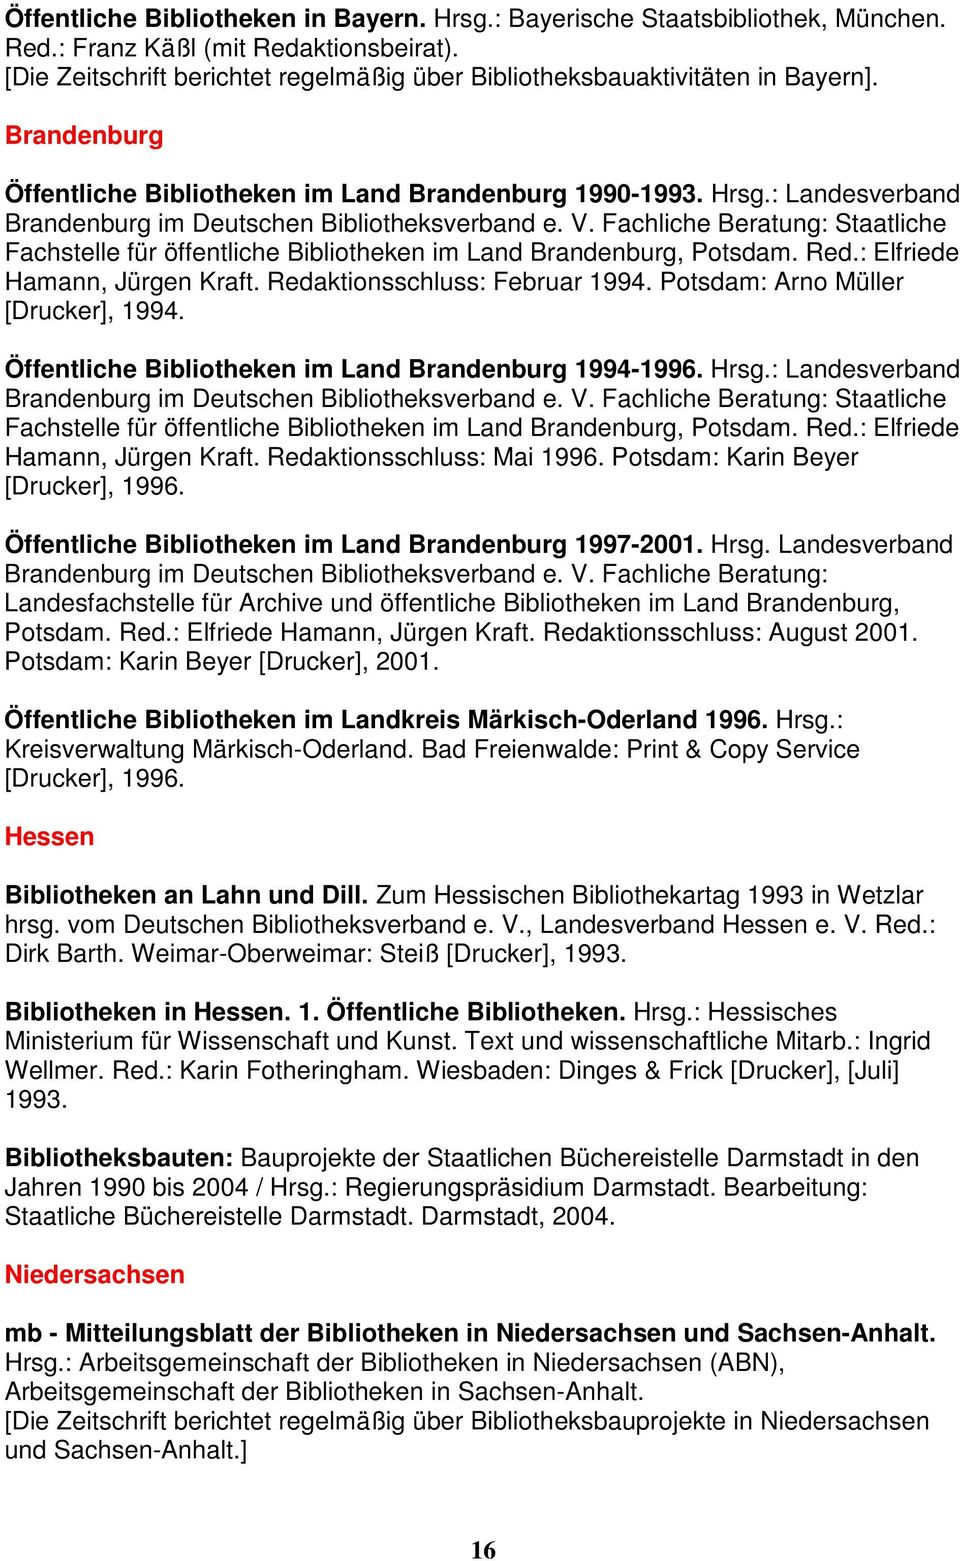 : Landesverband Brandenburg im Deutschen Bibliotheksverband e. V. Fachliche Beratung: Staatliche Fachstelle für öffentliche Bibliotheken im Land Brandenburg, Potsdam. Red.